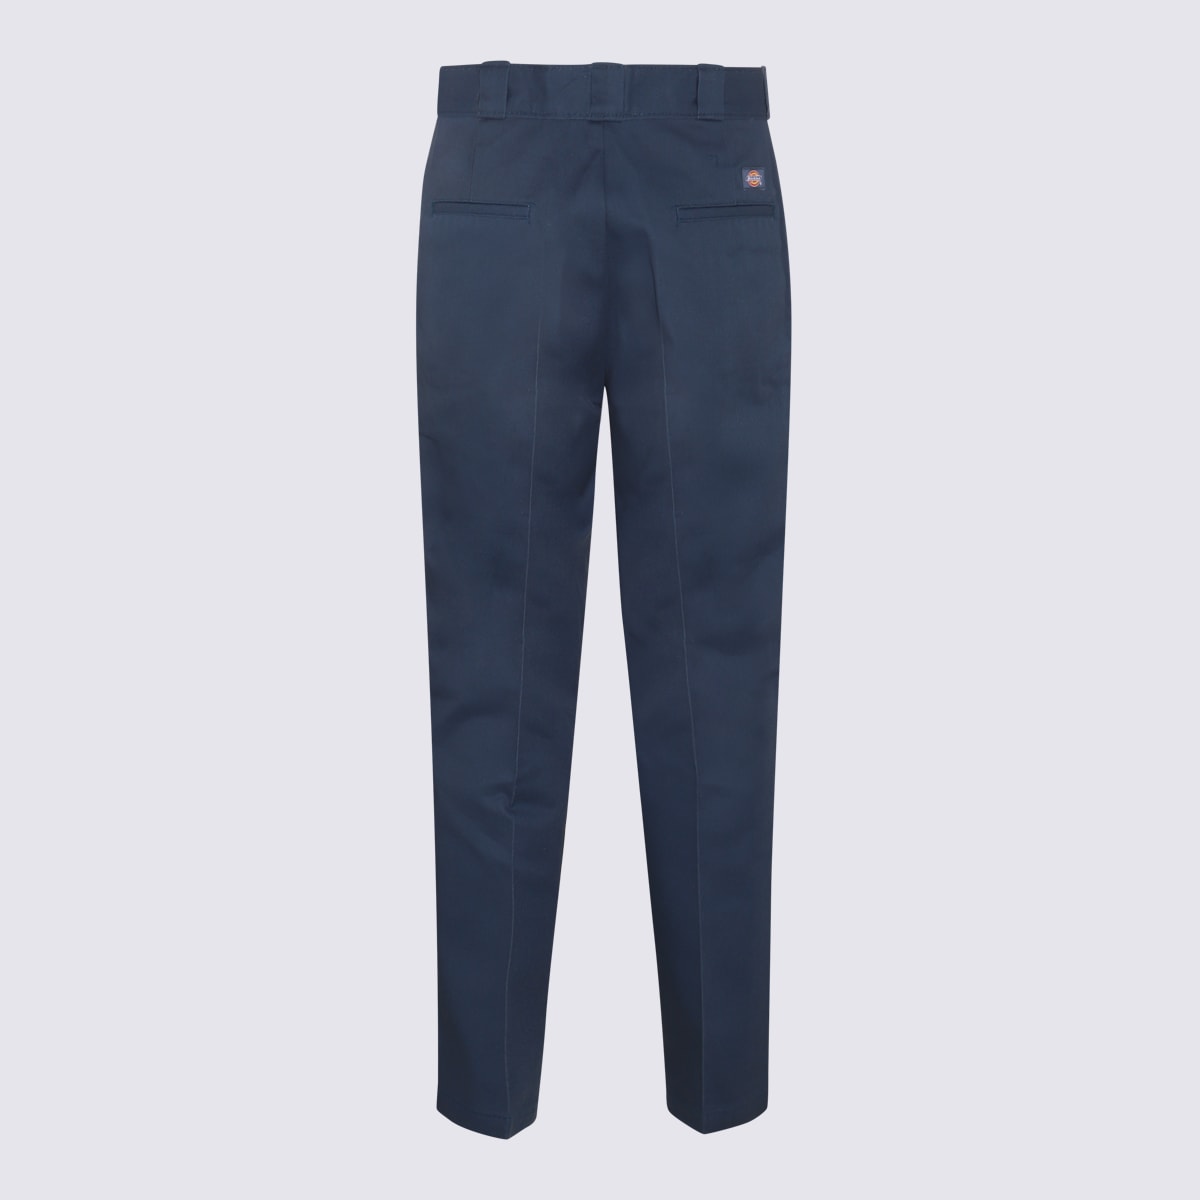 Shop Dickies Air Force Blue Cotton Blend Pants